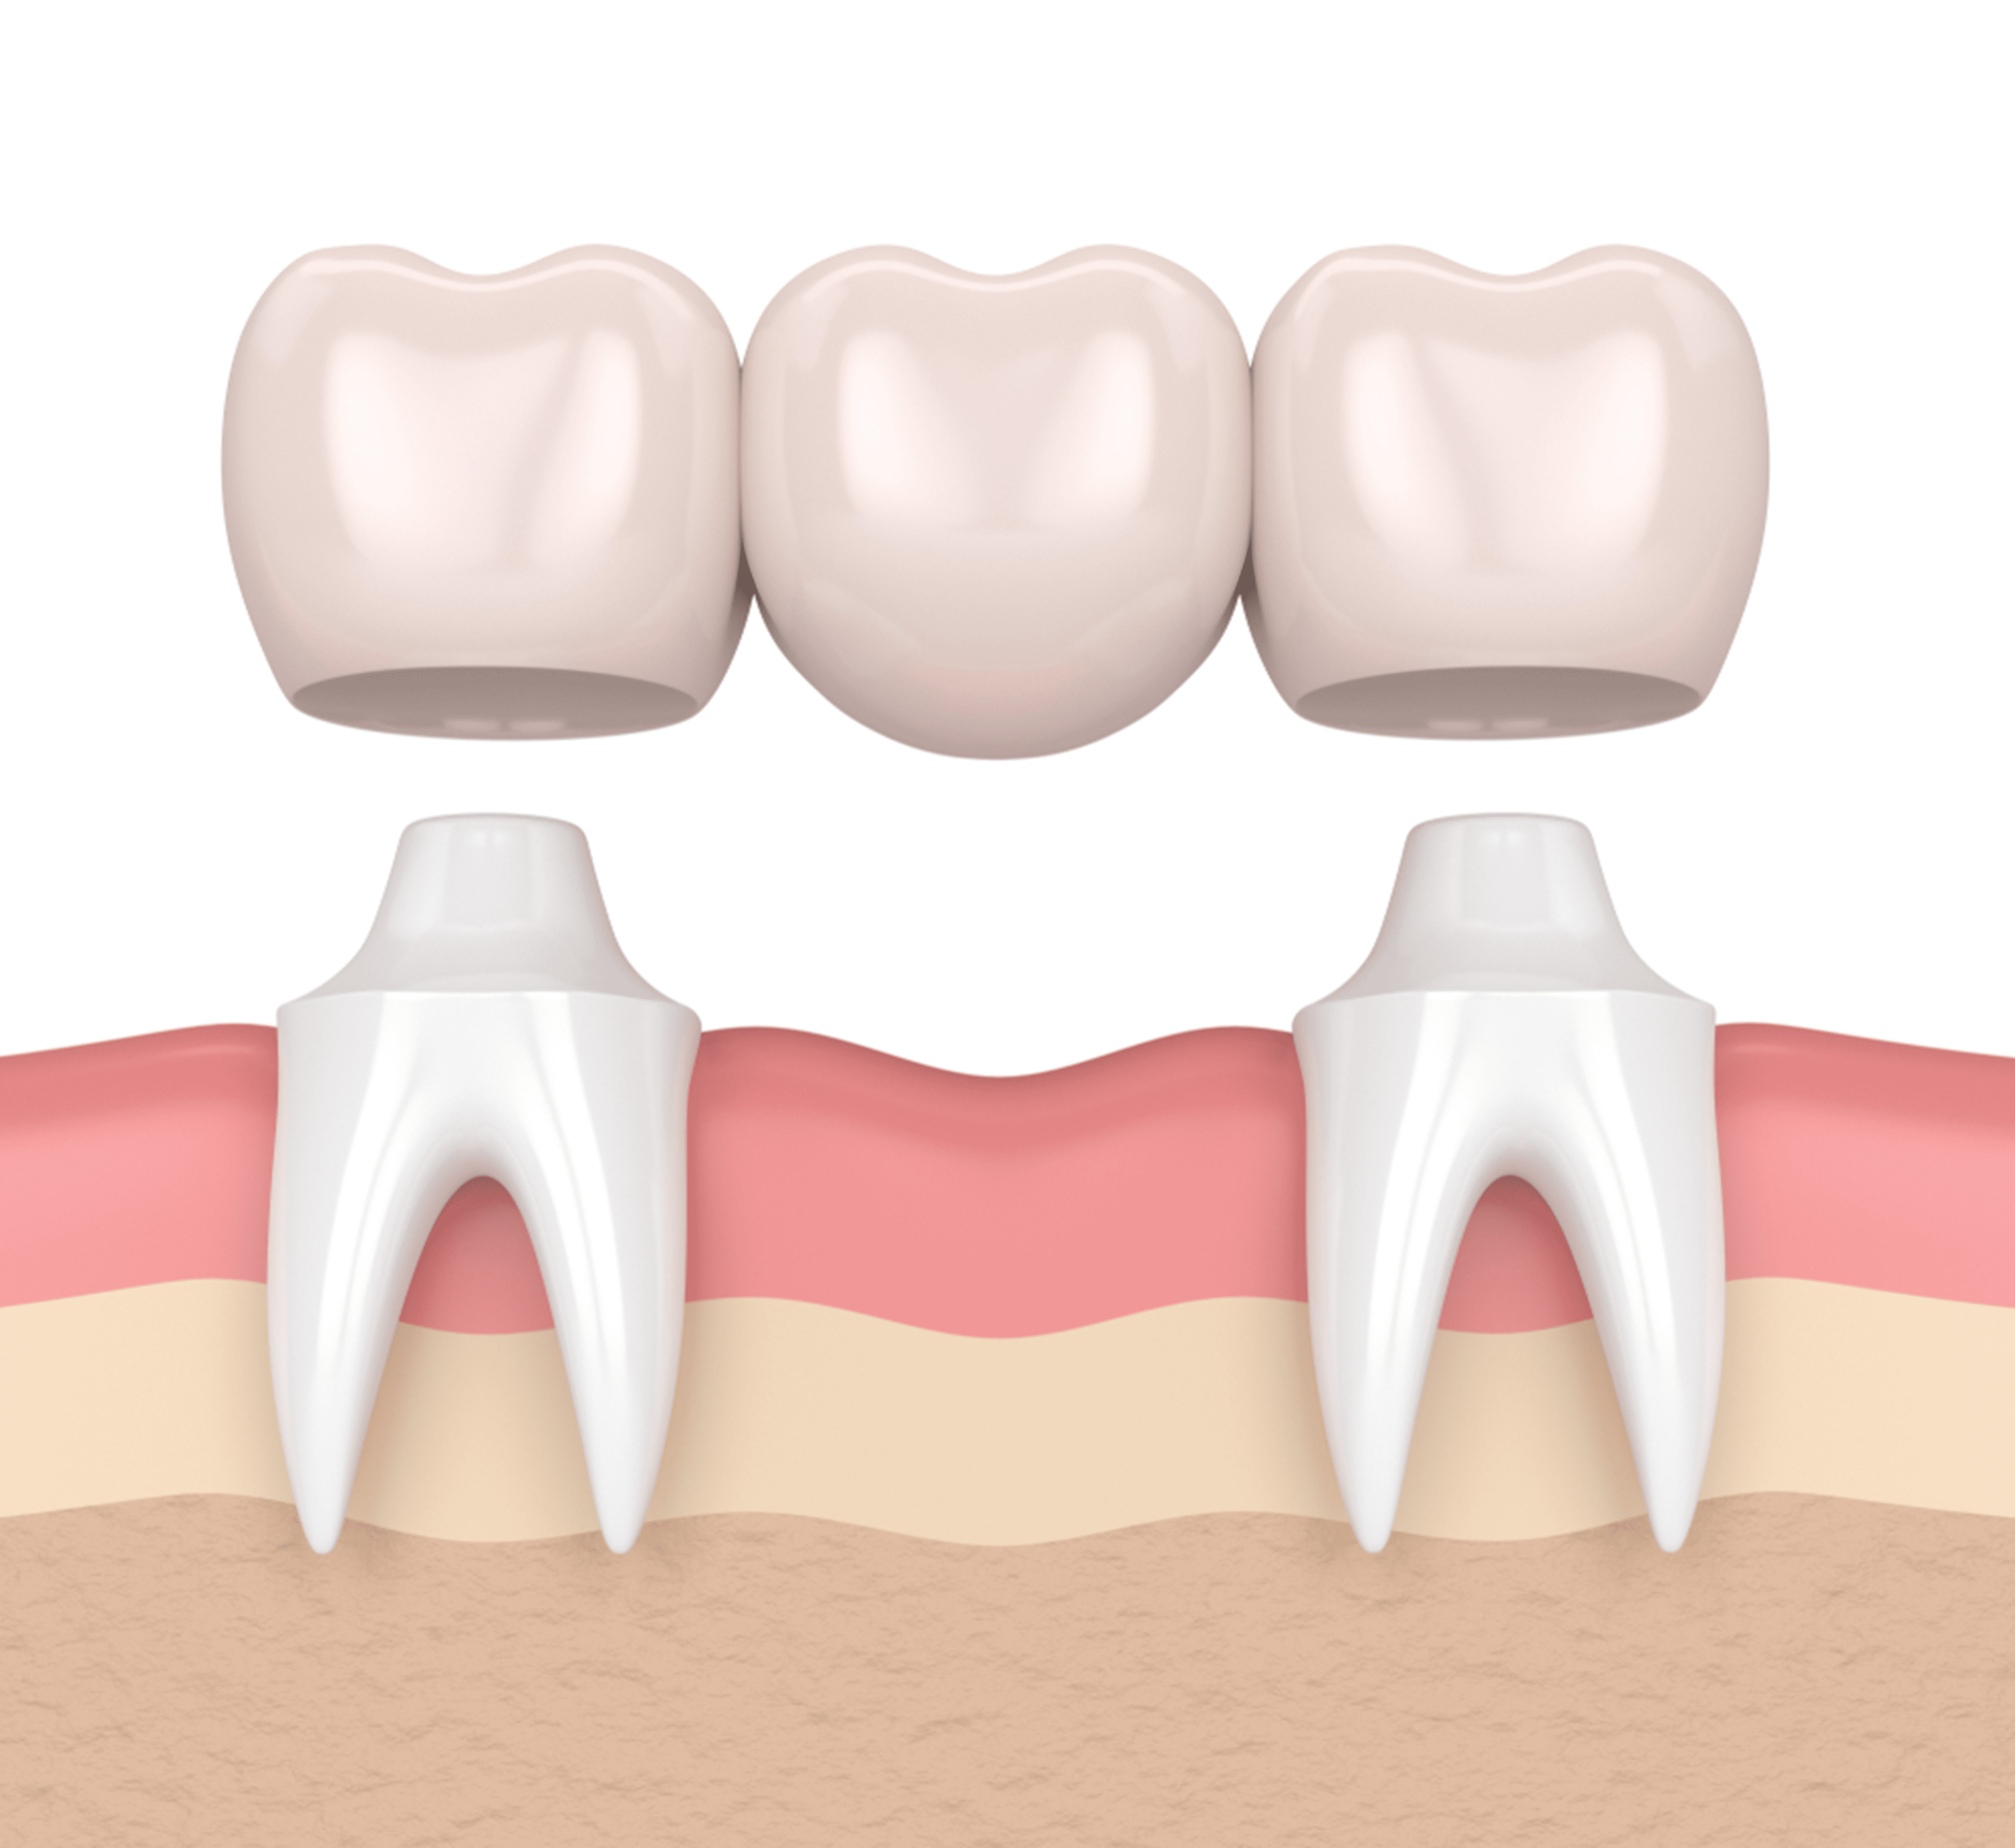 Are Dental Bridges Safe?